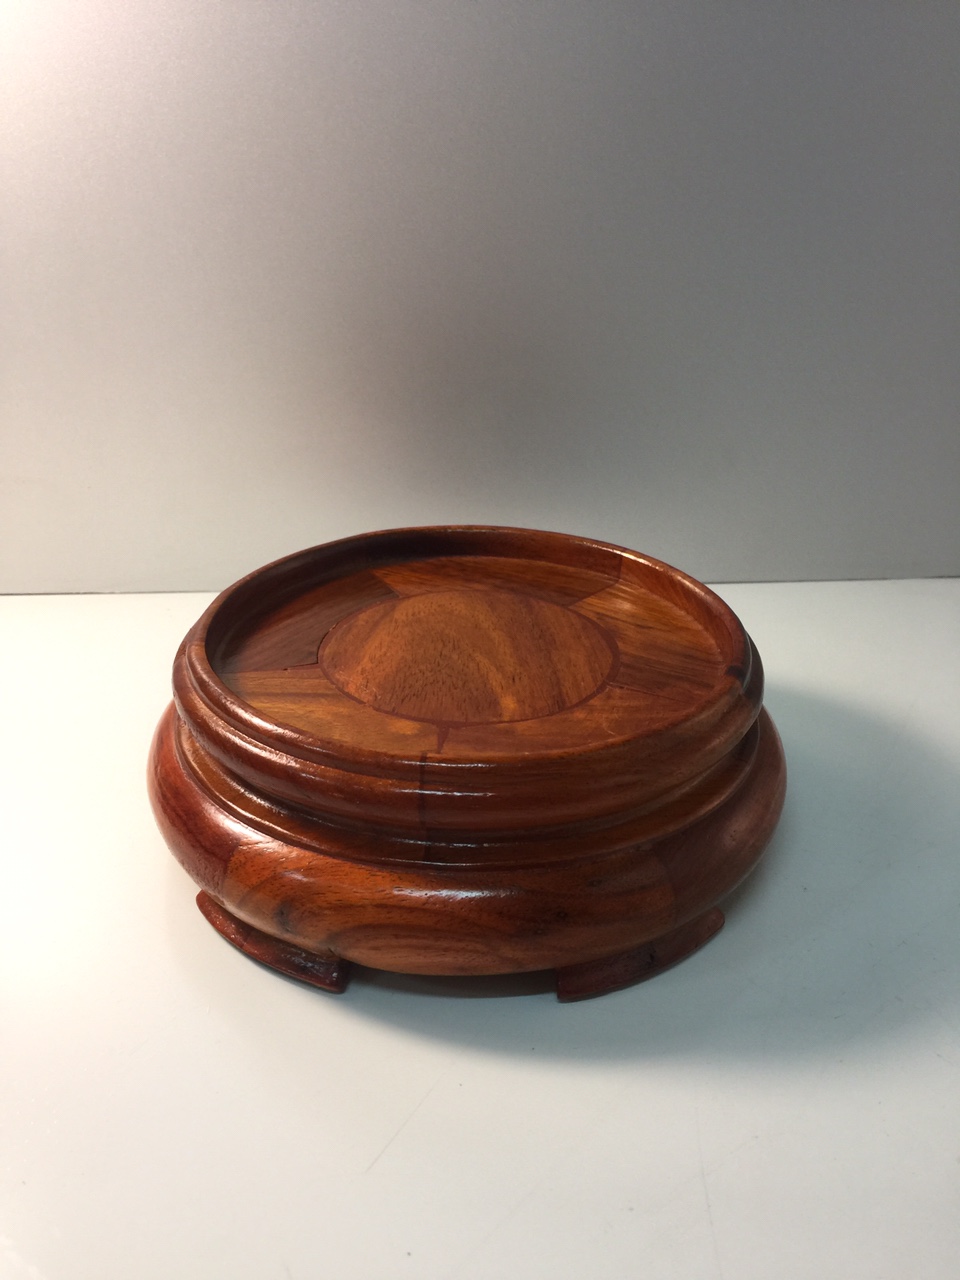 Đế Bát Hương chất liệu gỗ hương (kê bát hương) - 5,5x10 cm